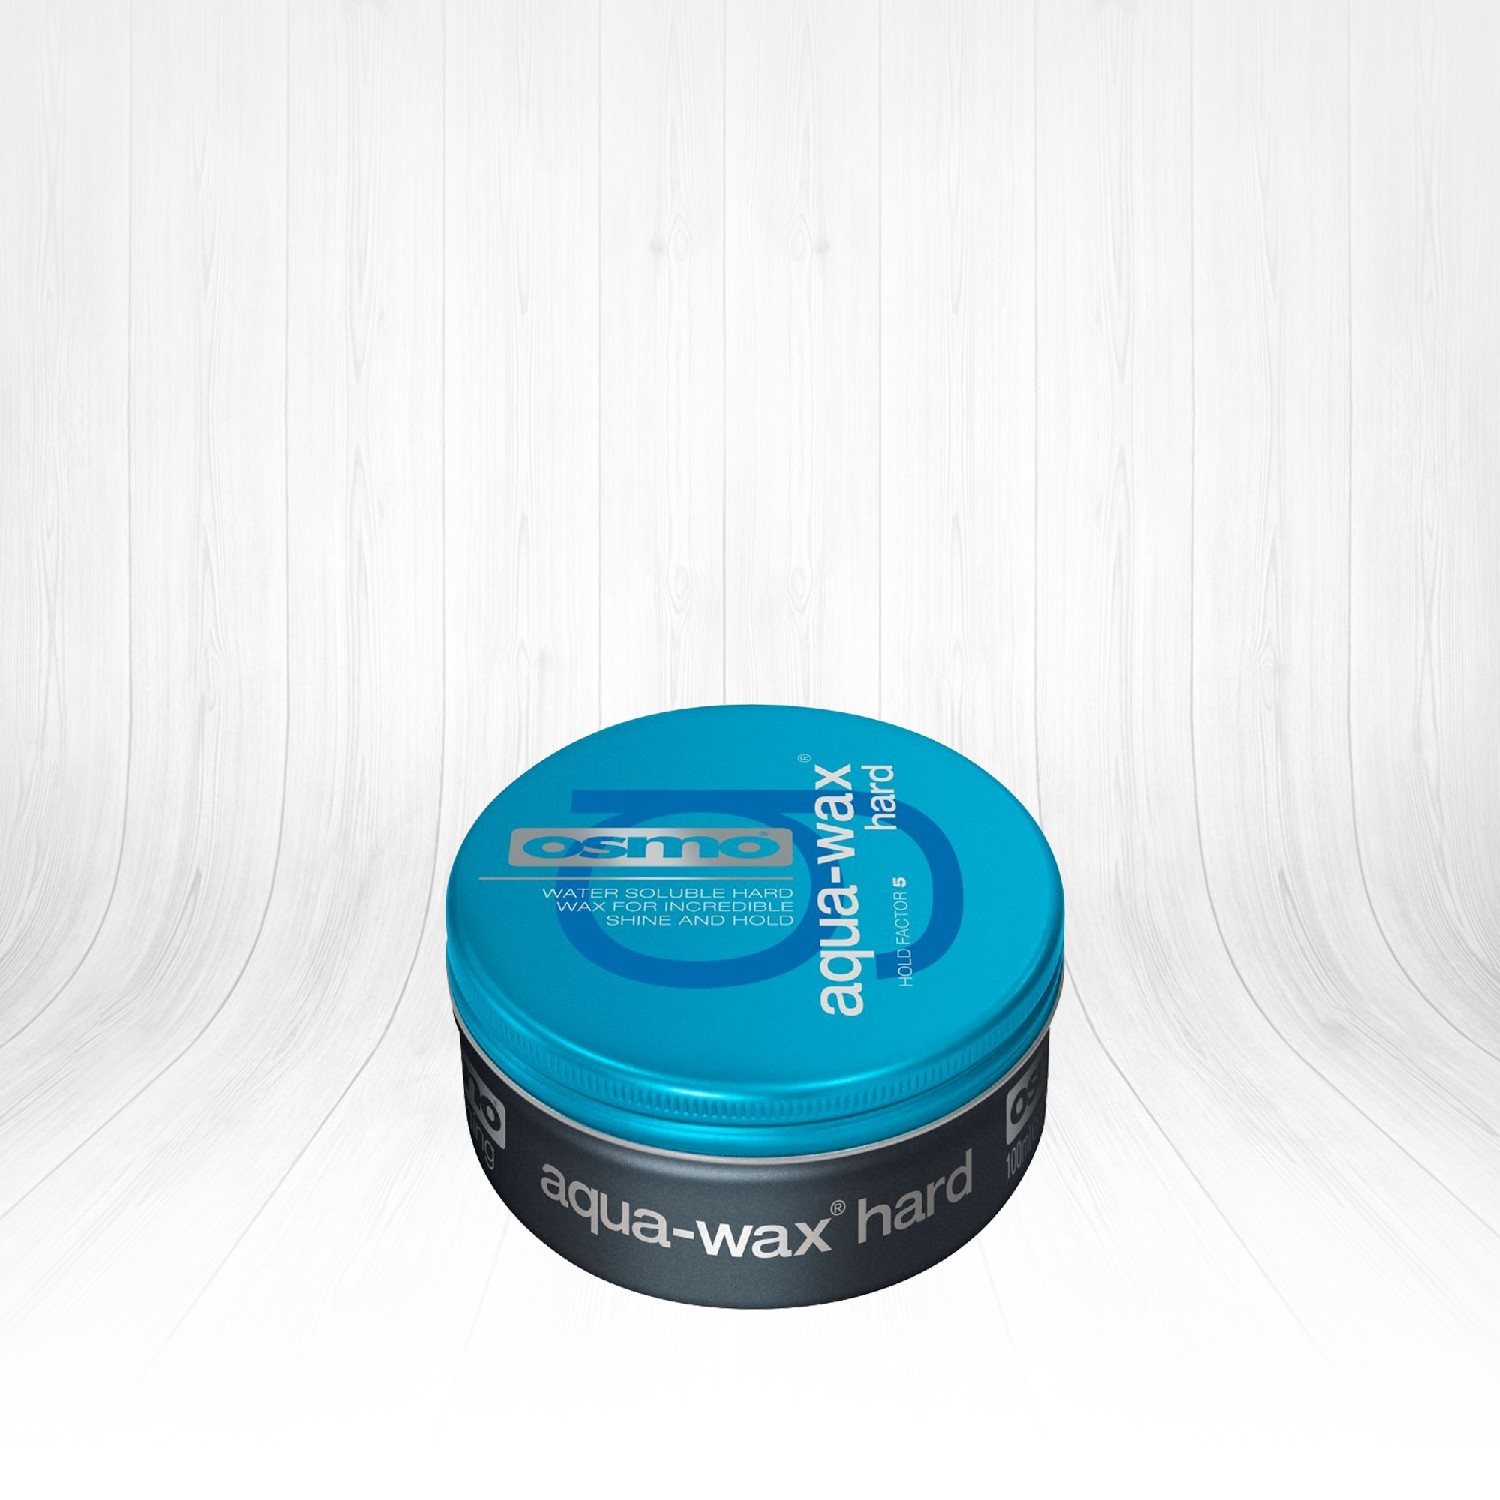 Osmo Aqua Wax Hard Yoğun Parlaklık Veren Çok Sert Wax